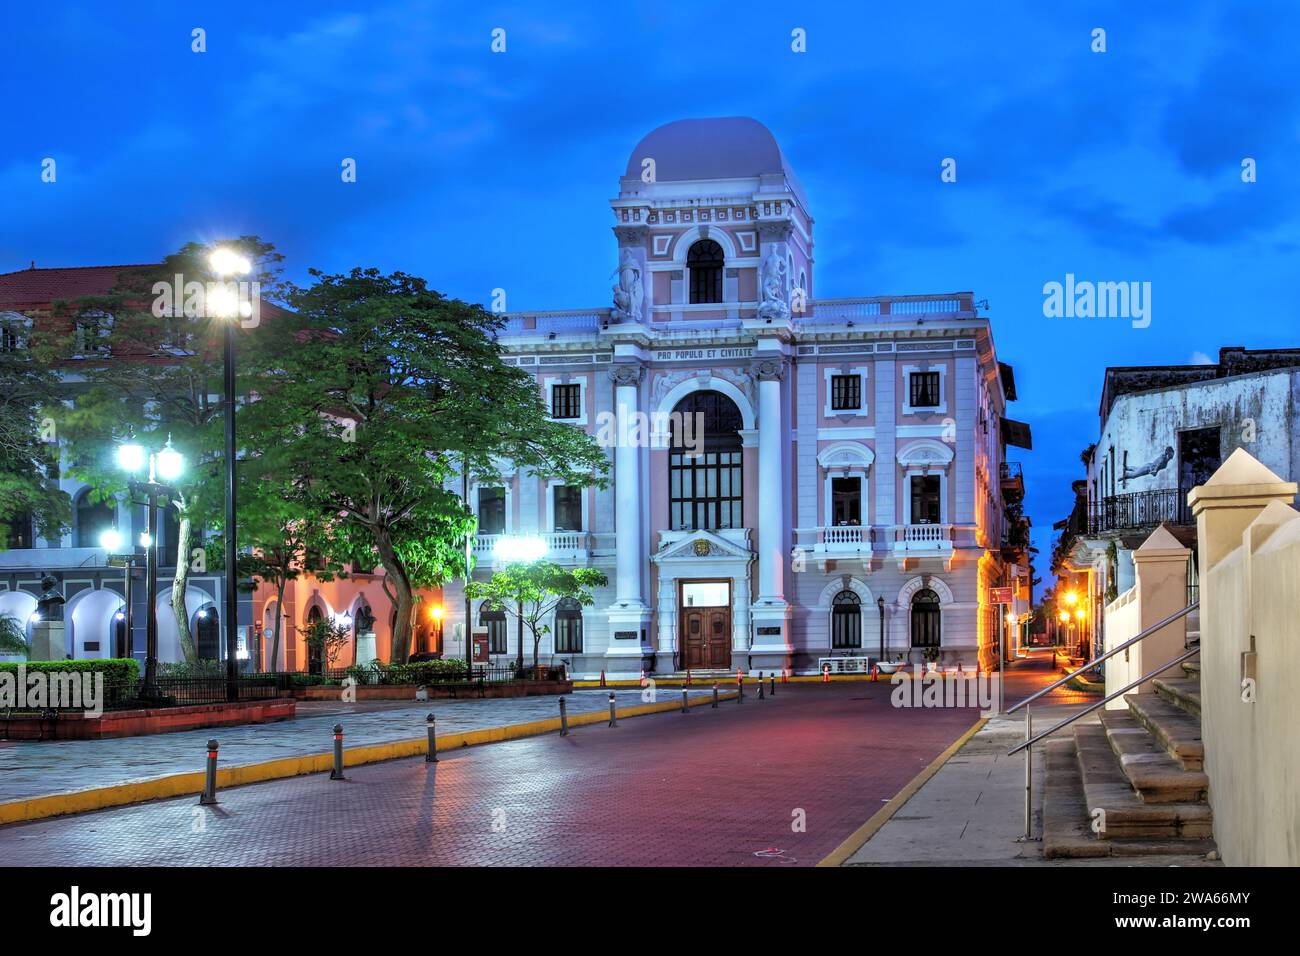 Stadtpalast auf der Plaza del Cathedral, Casco Viejo (Altstadt) von Panama City, wo sich das nationale Geschichtsmuseum im ersten Stock befindet. Stockfoto